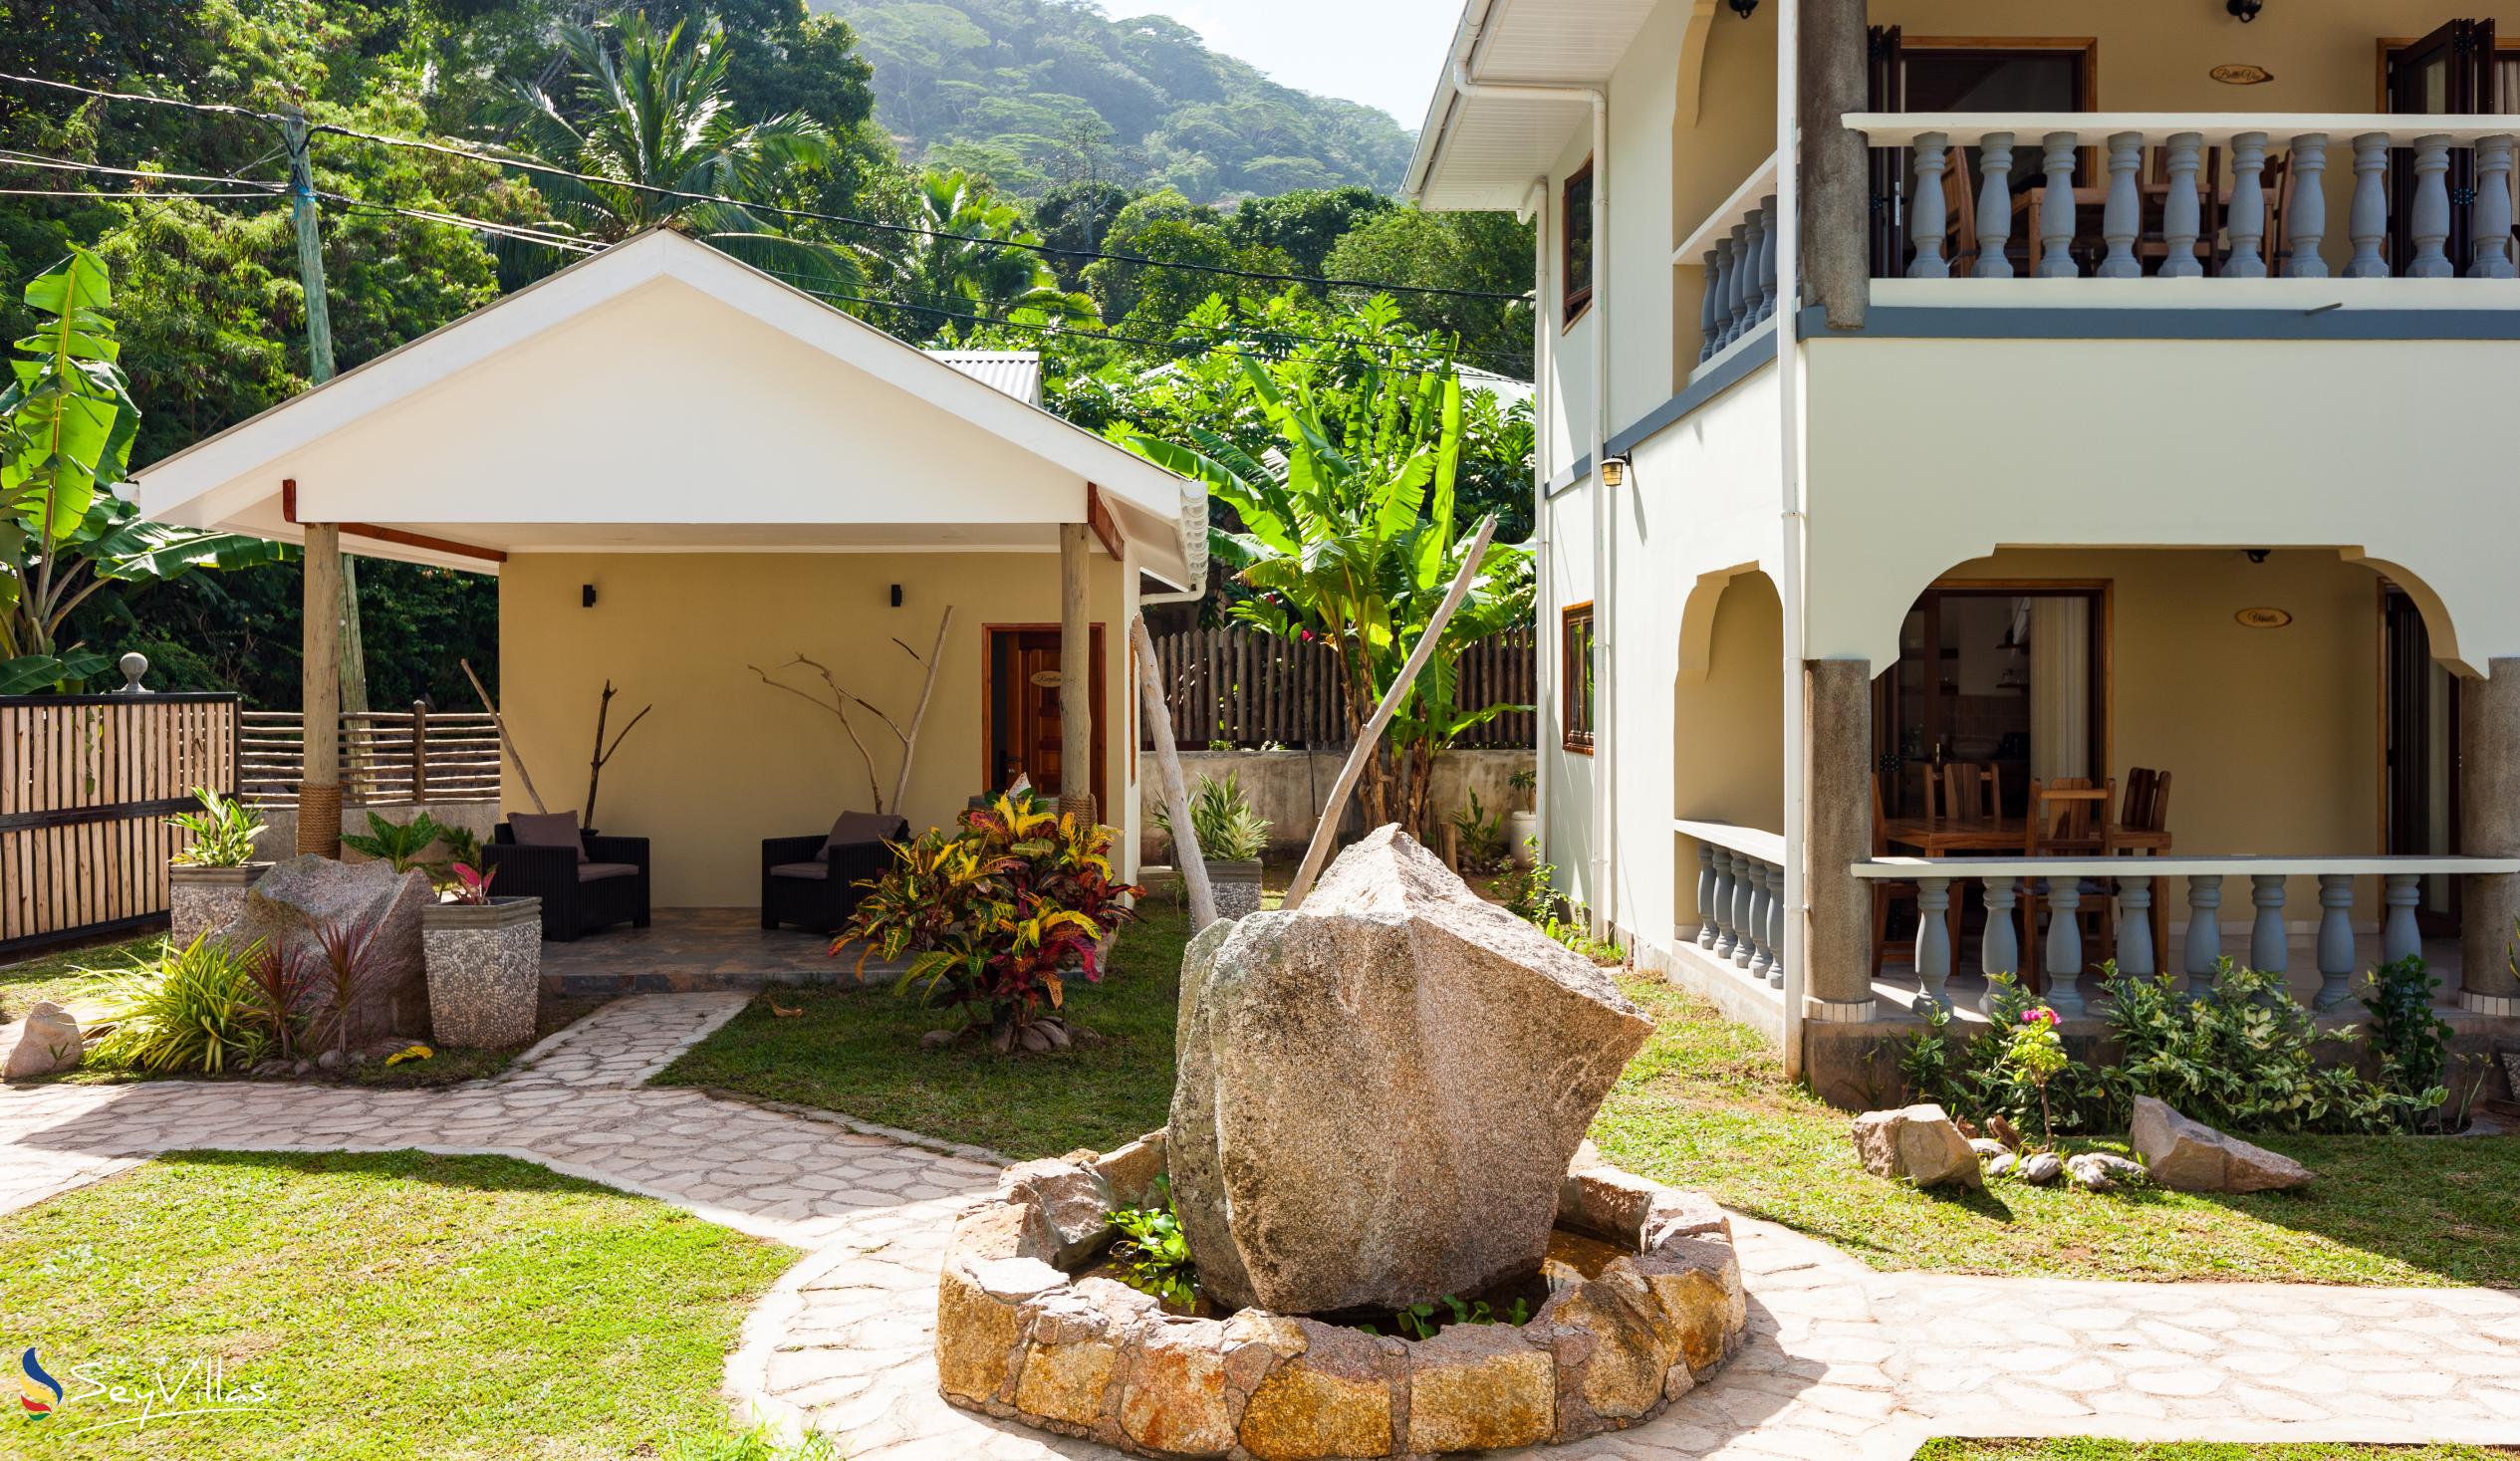 Photo 5: Maison Ed-Elle - Outdoor area - La Digue (Seychelles)